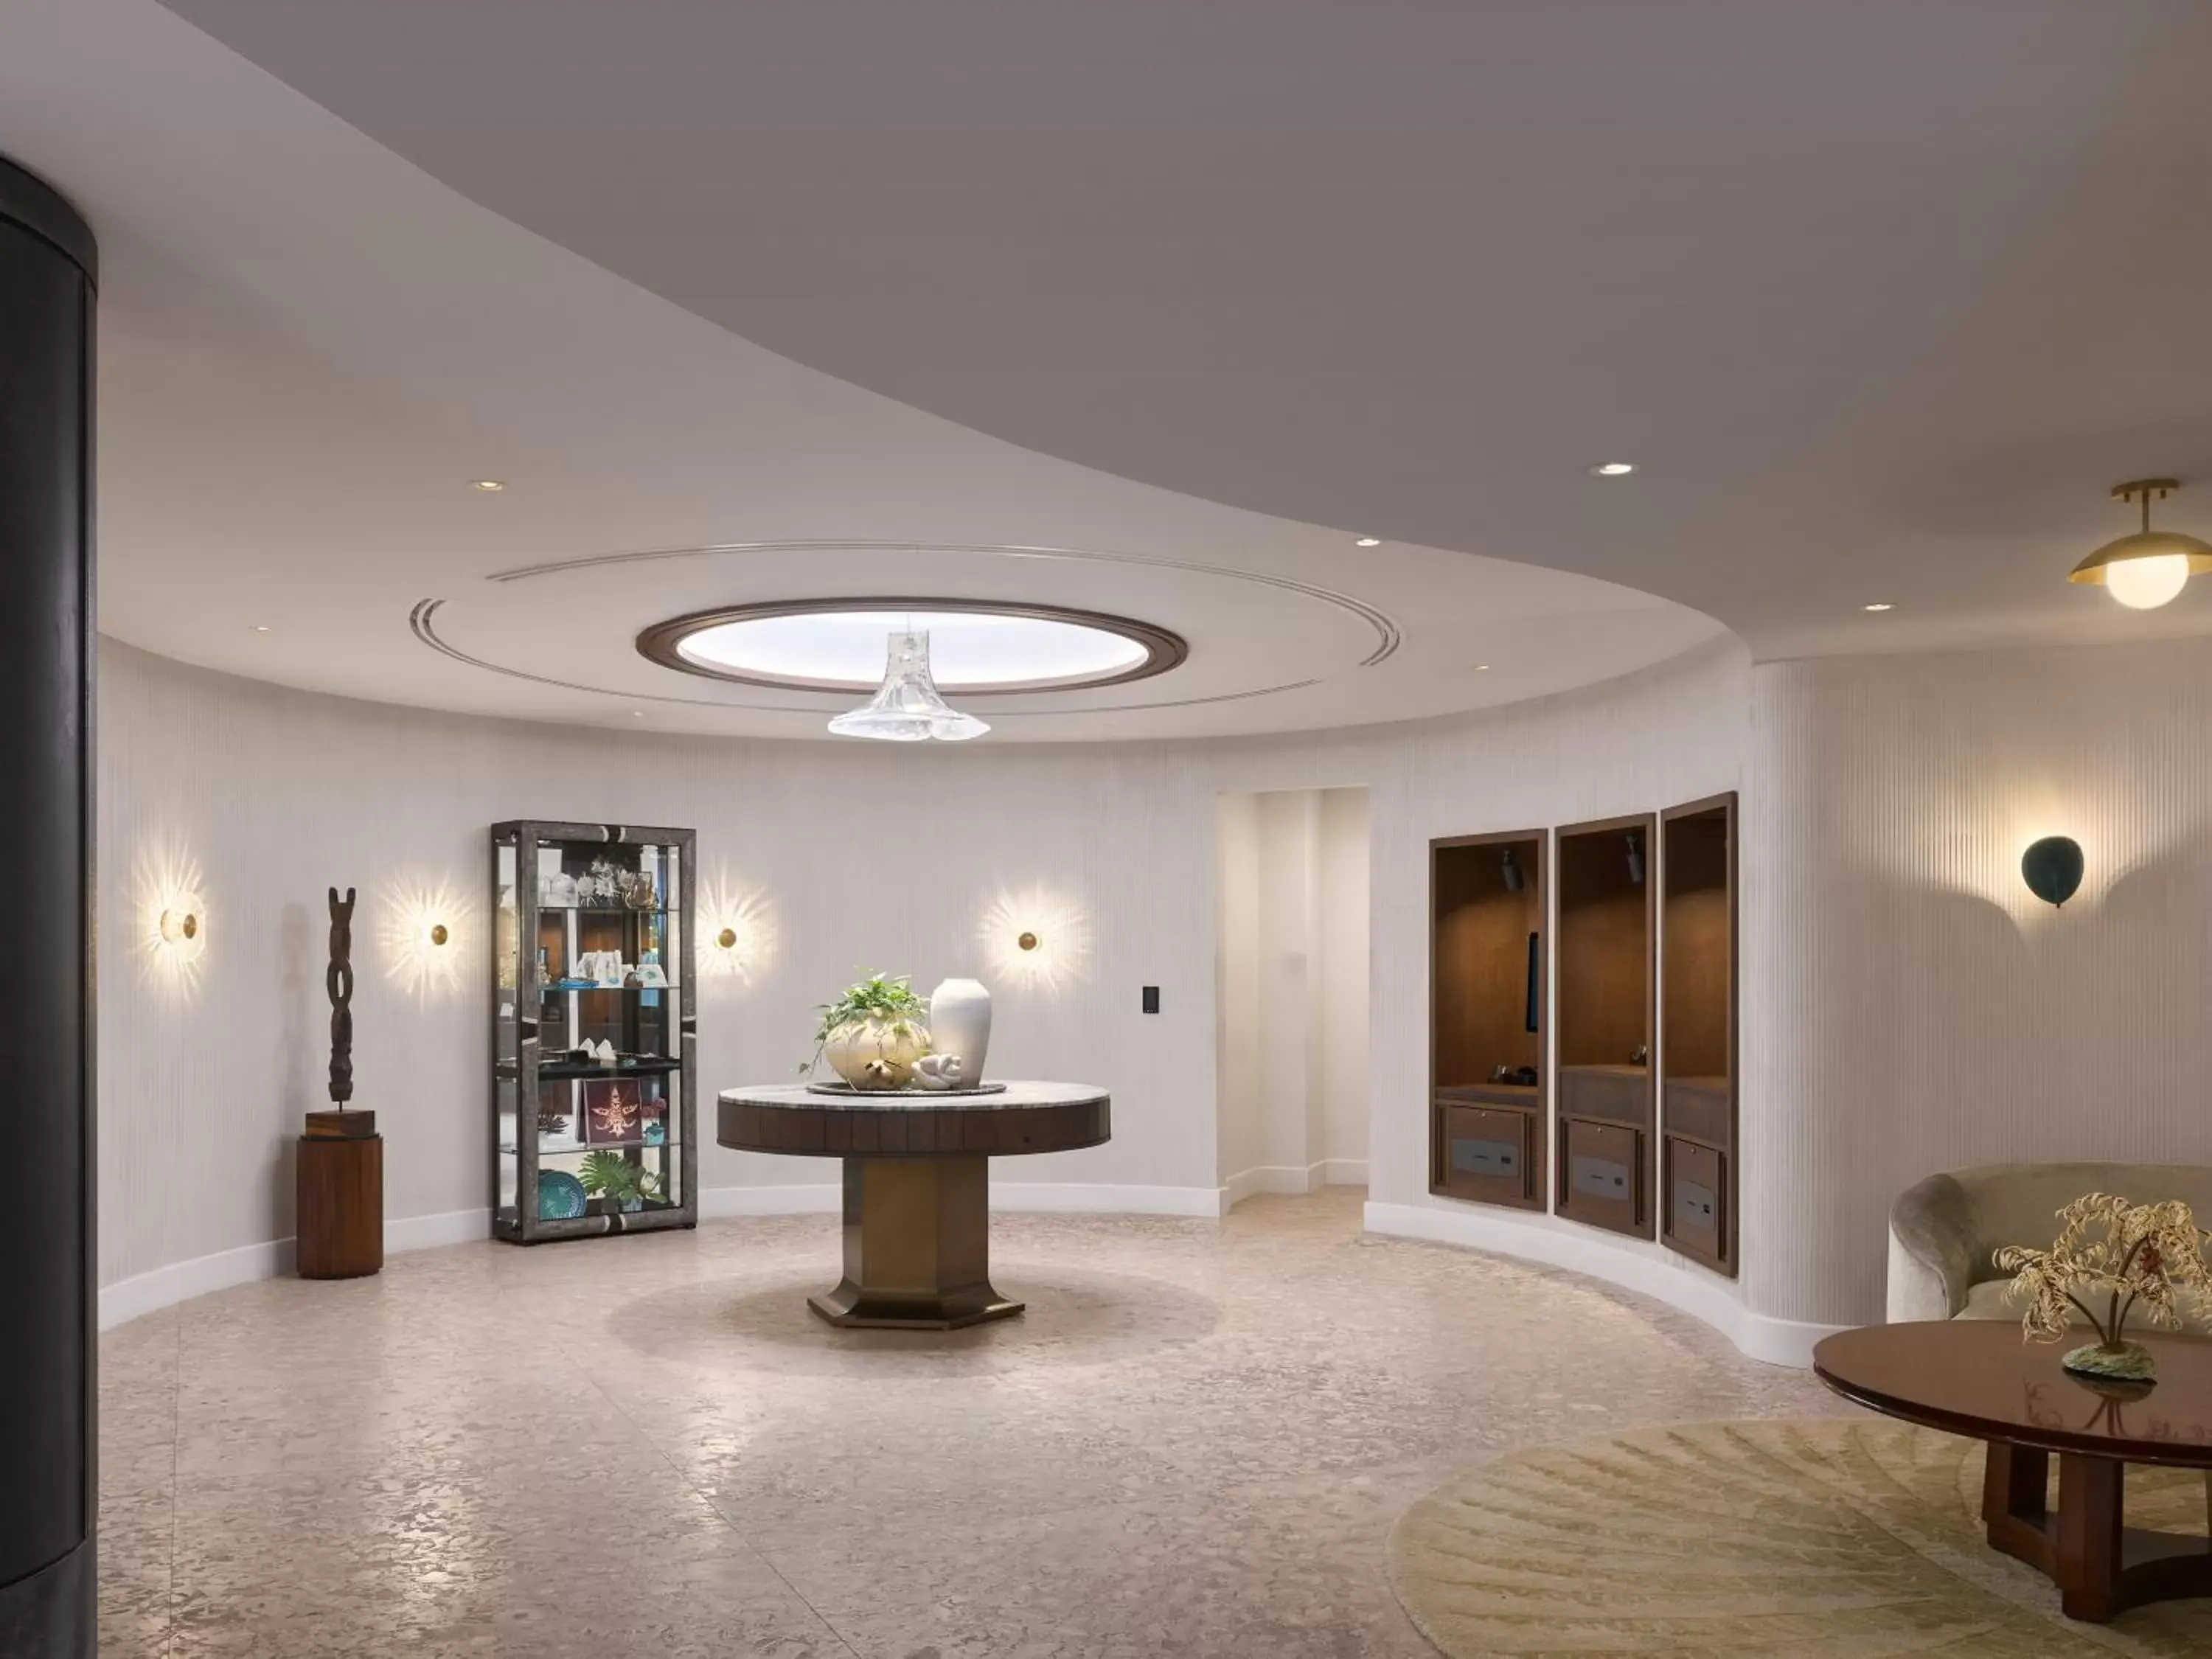 Lobby or reception, Lobby/Reception in Mayfair House Hotel & Garden